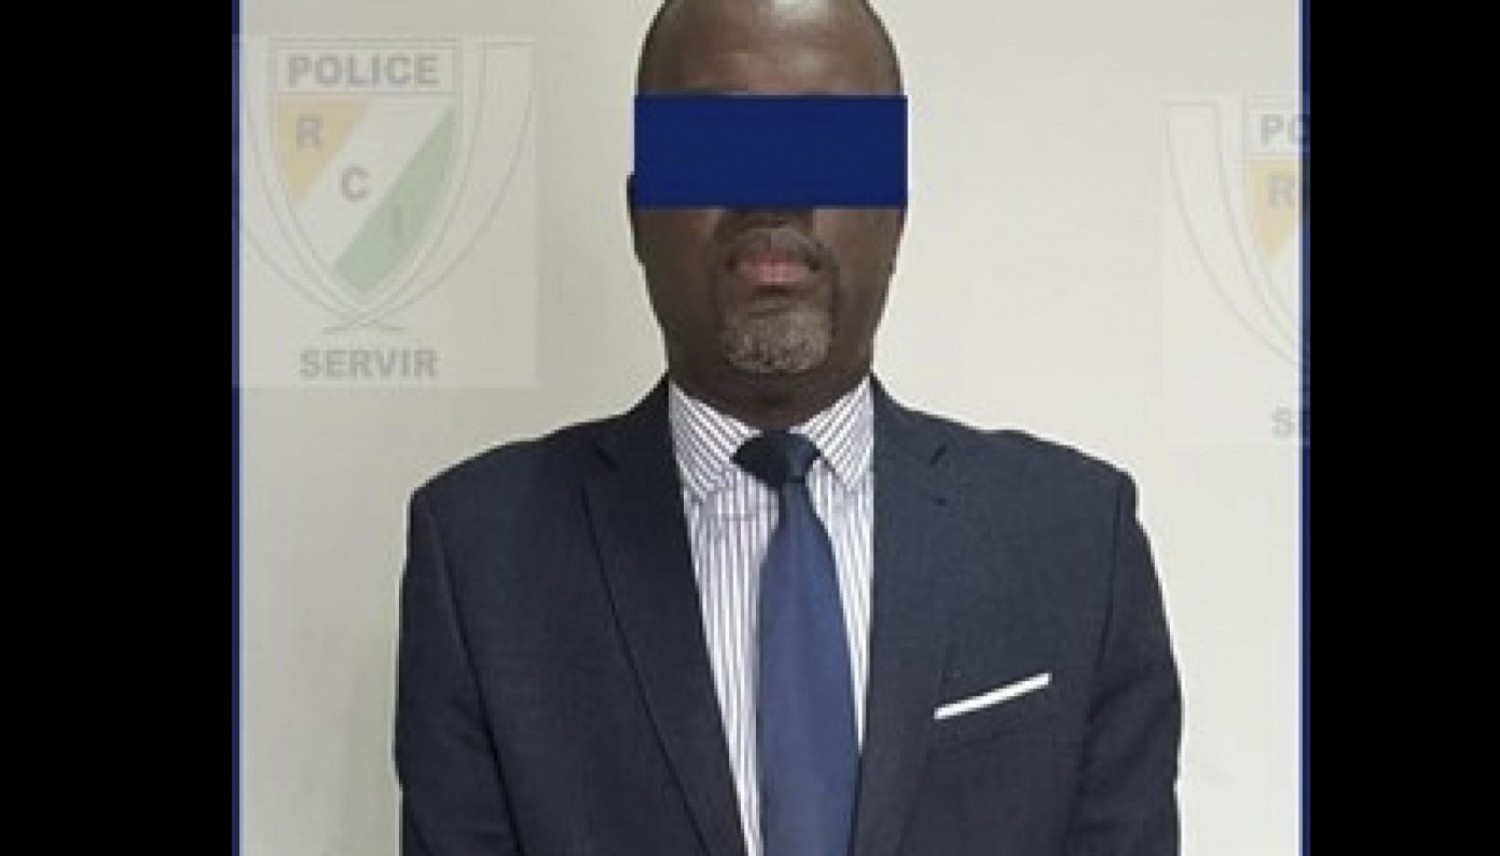 Côte d'Ivoire : Un banquier interpellé et sera conduit devant le parquet pour avoir refusé d'obtempérer aux consignes d'un agent de Police